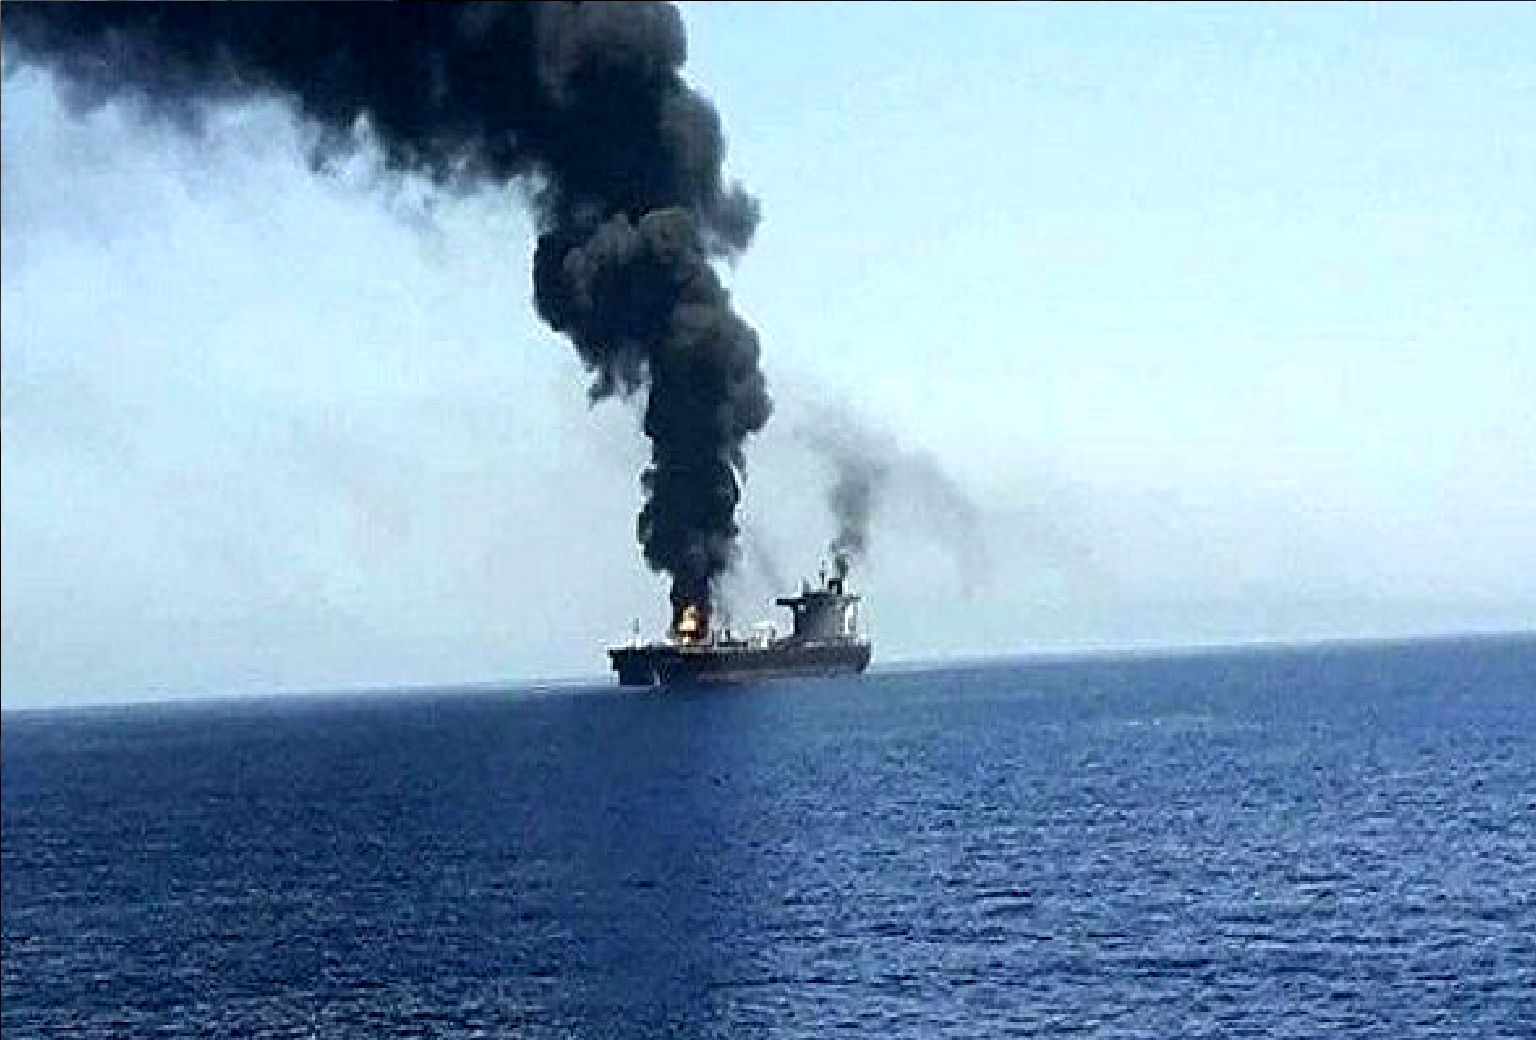 فوری؛ یک کشتی در دریای سرخ هدف حمله موشکی قرار گرفت